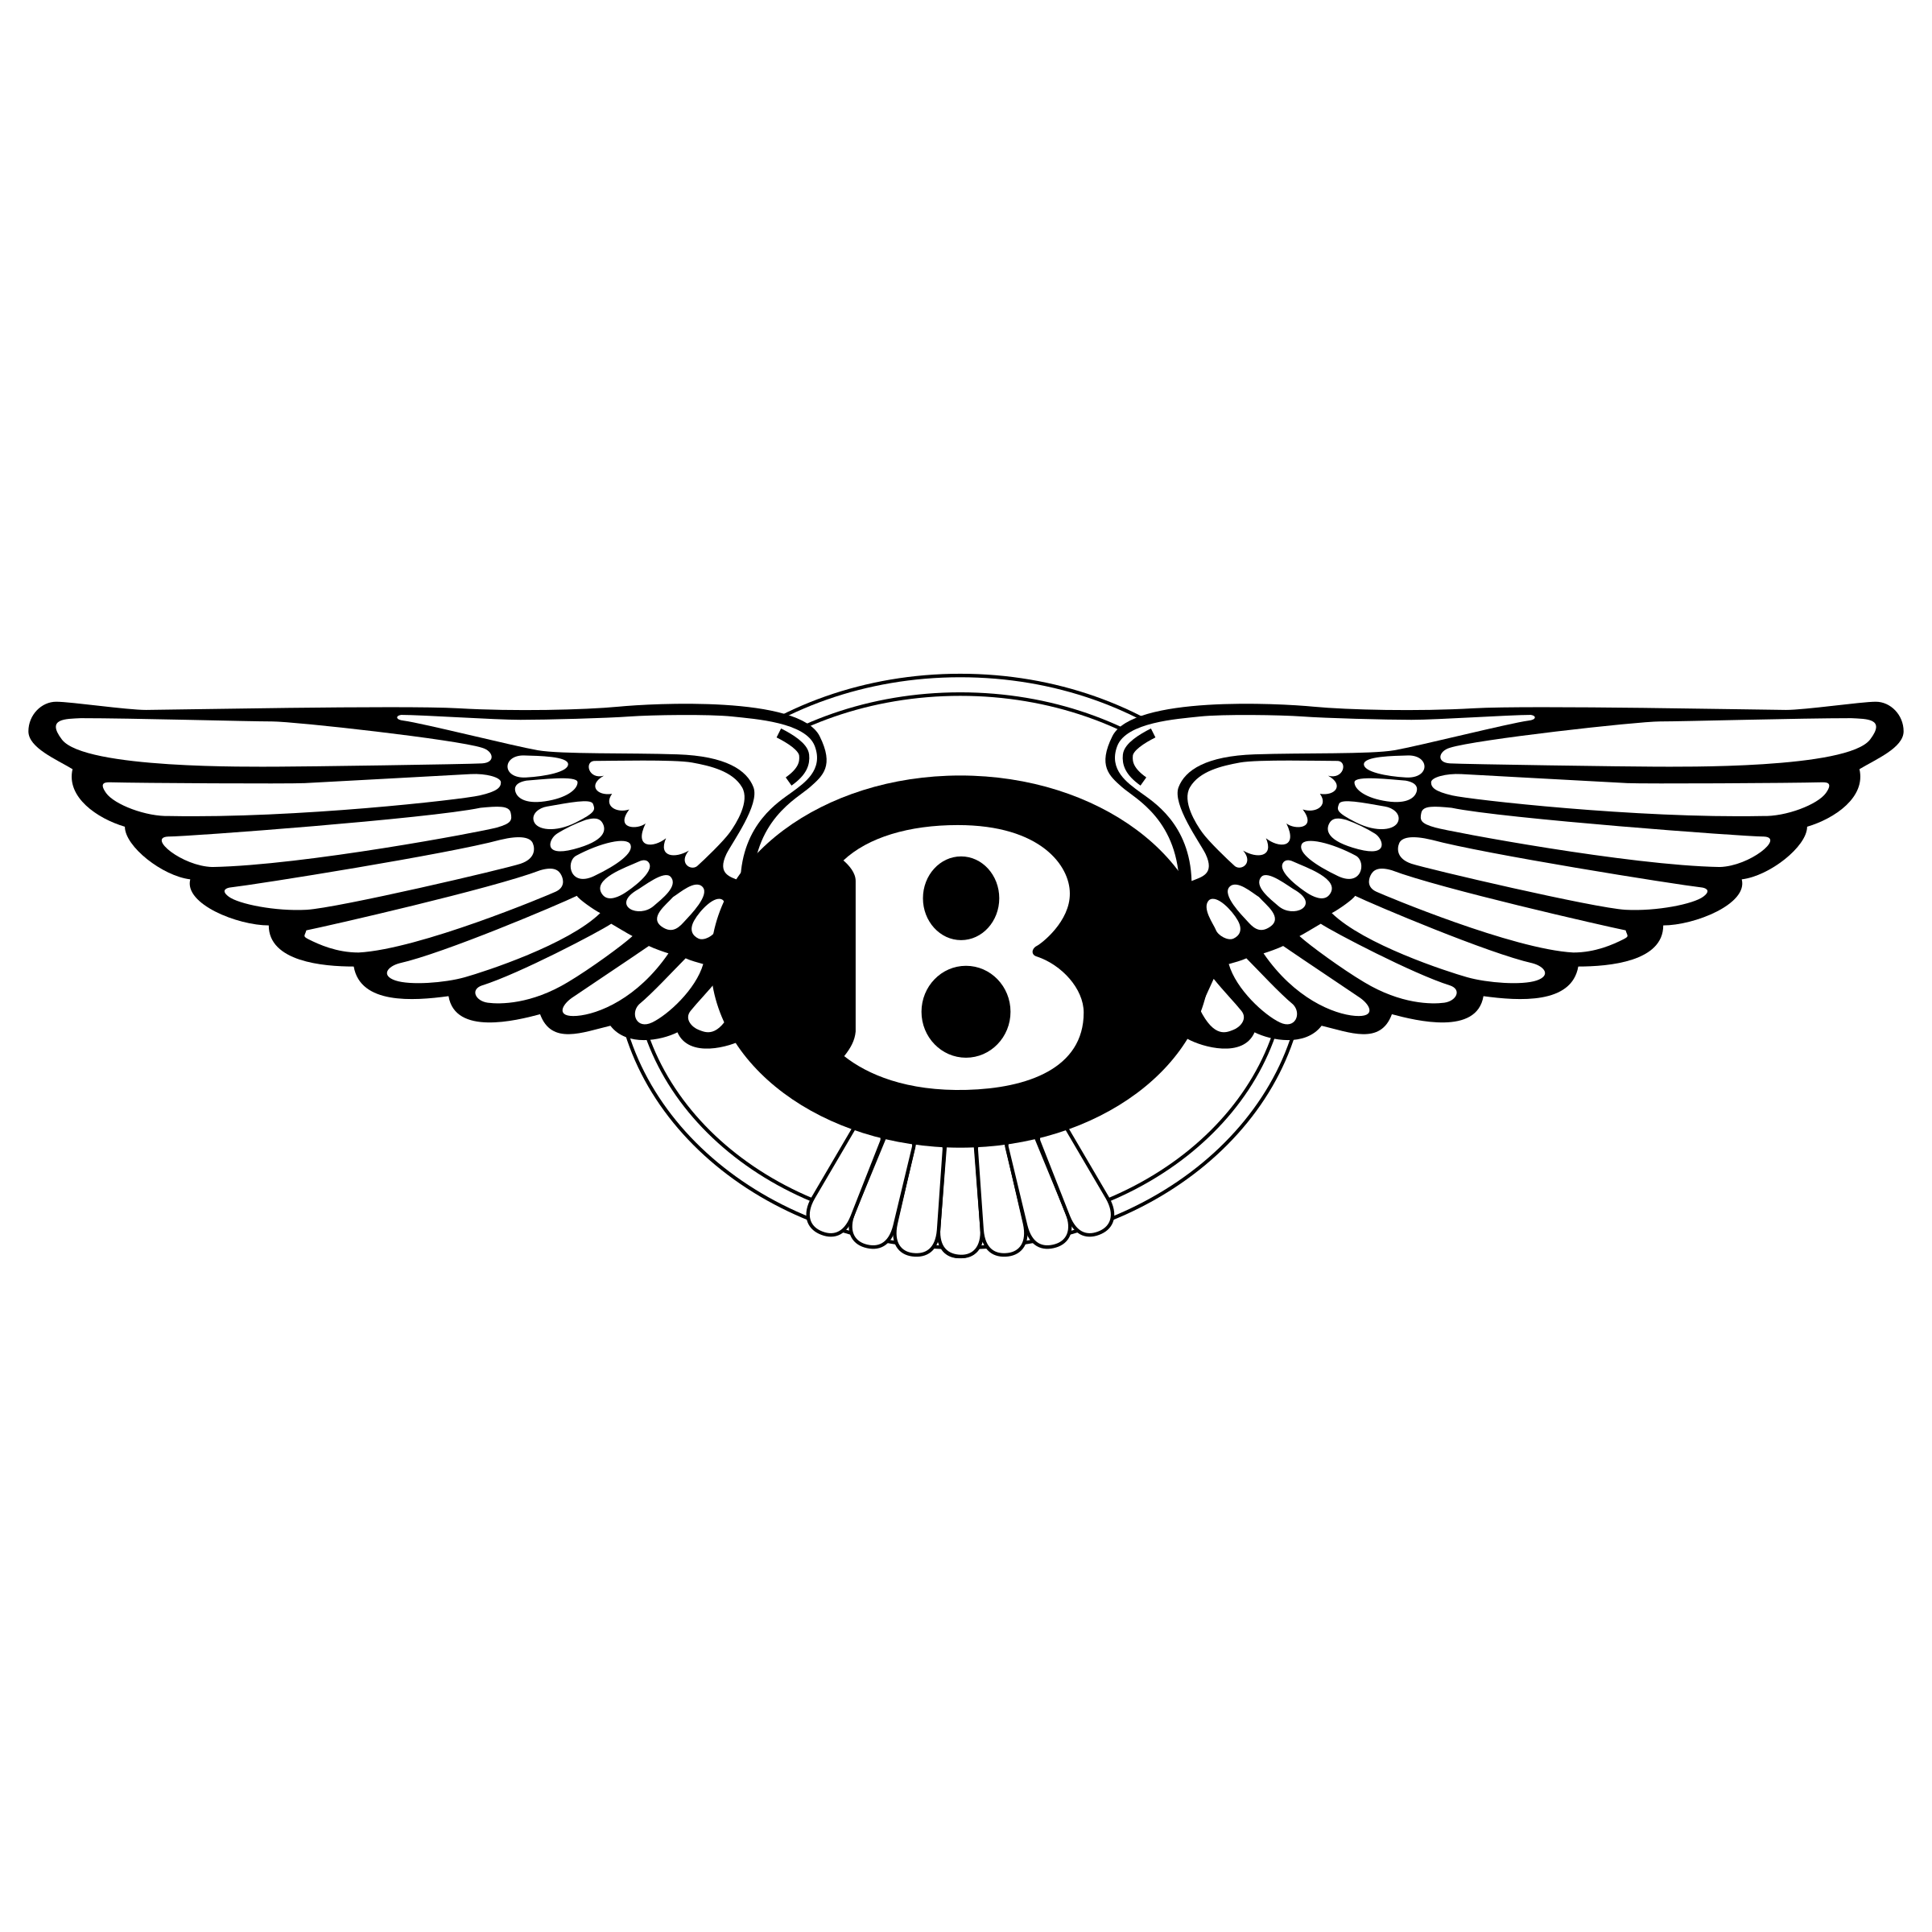 Bentley Mulsanne Car Dealersh